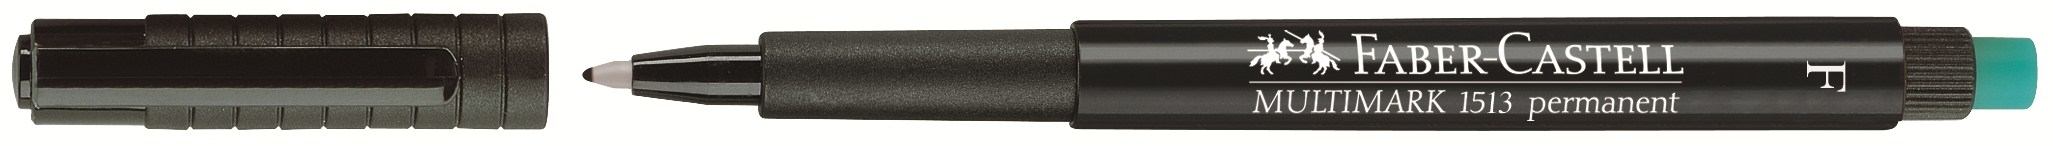 FABER-CASTELL OHP MULTIMARK F 151399 noir perm. noir perm.